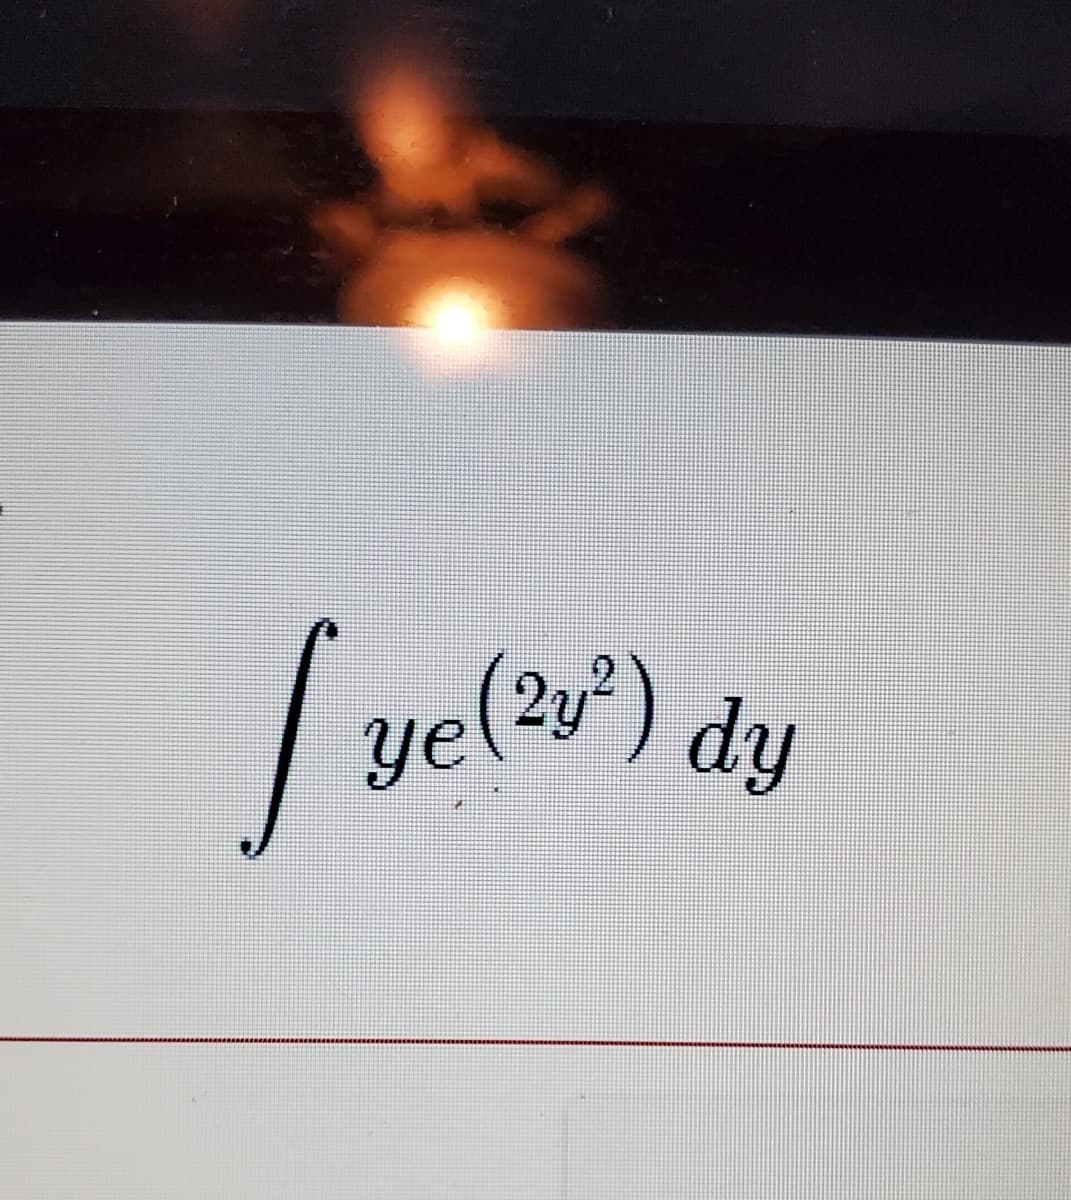 ve(r)
(23°) dy
ye(?y²)
